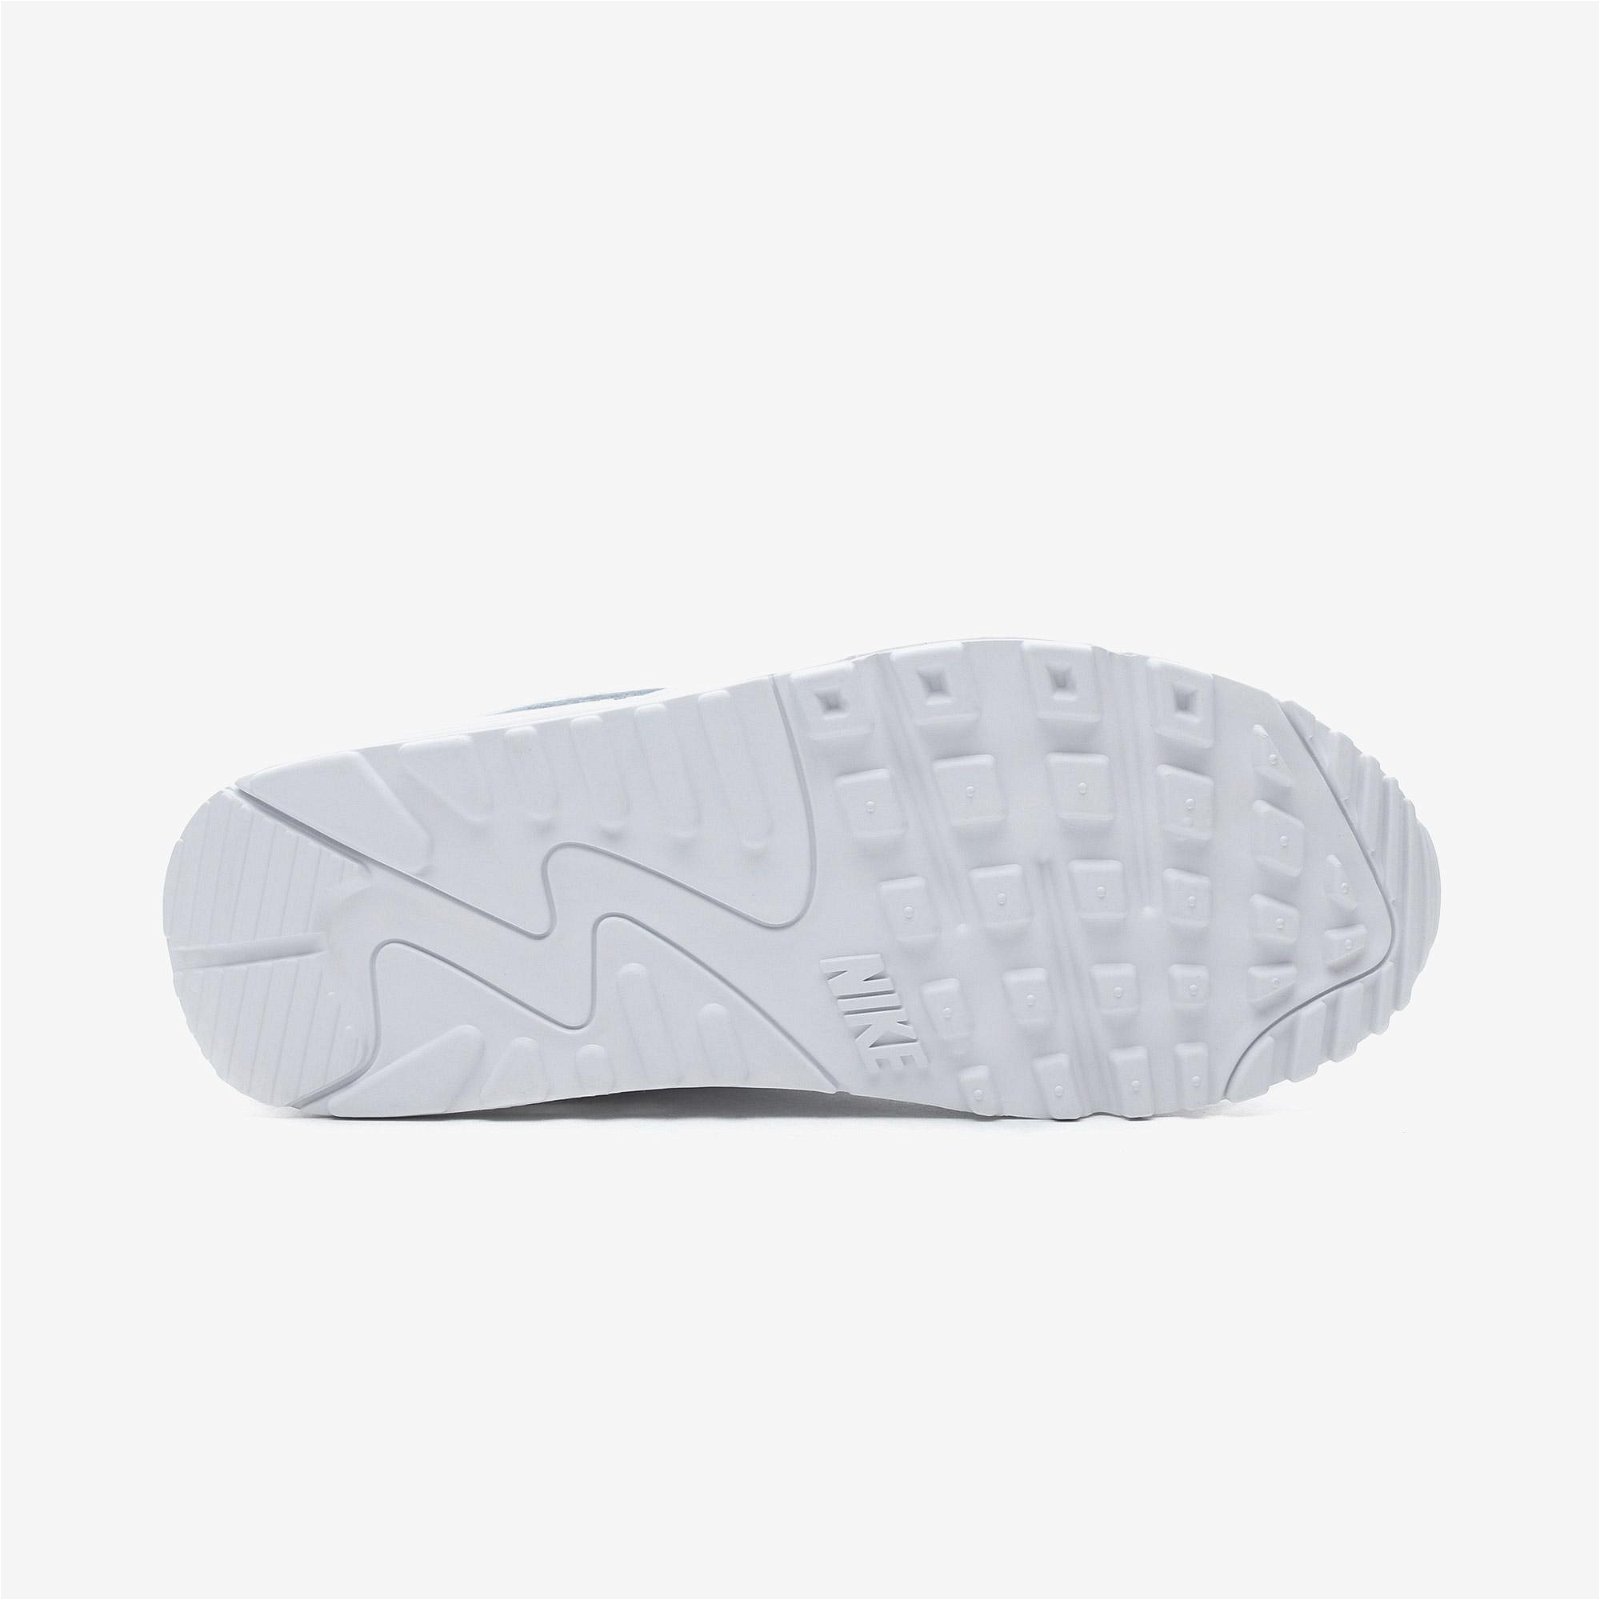 Nike Air Max 90 Beyaz Spor Ayakkabı